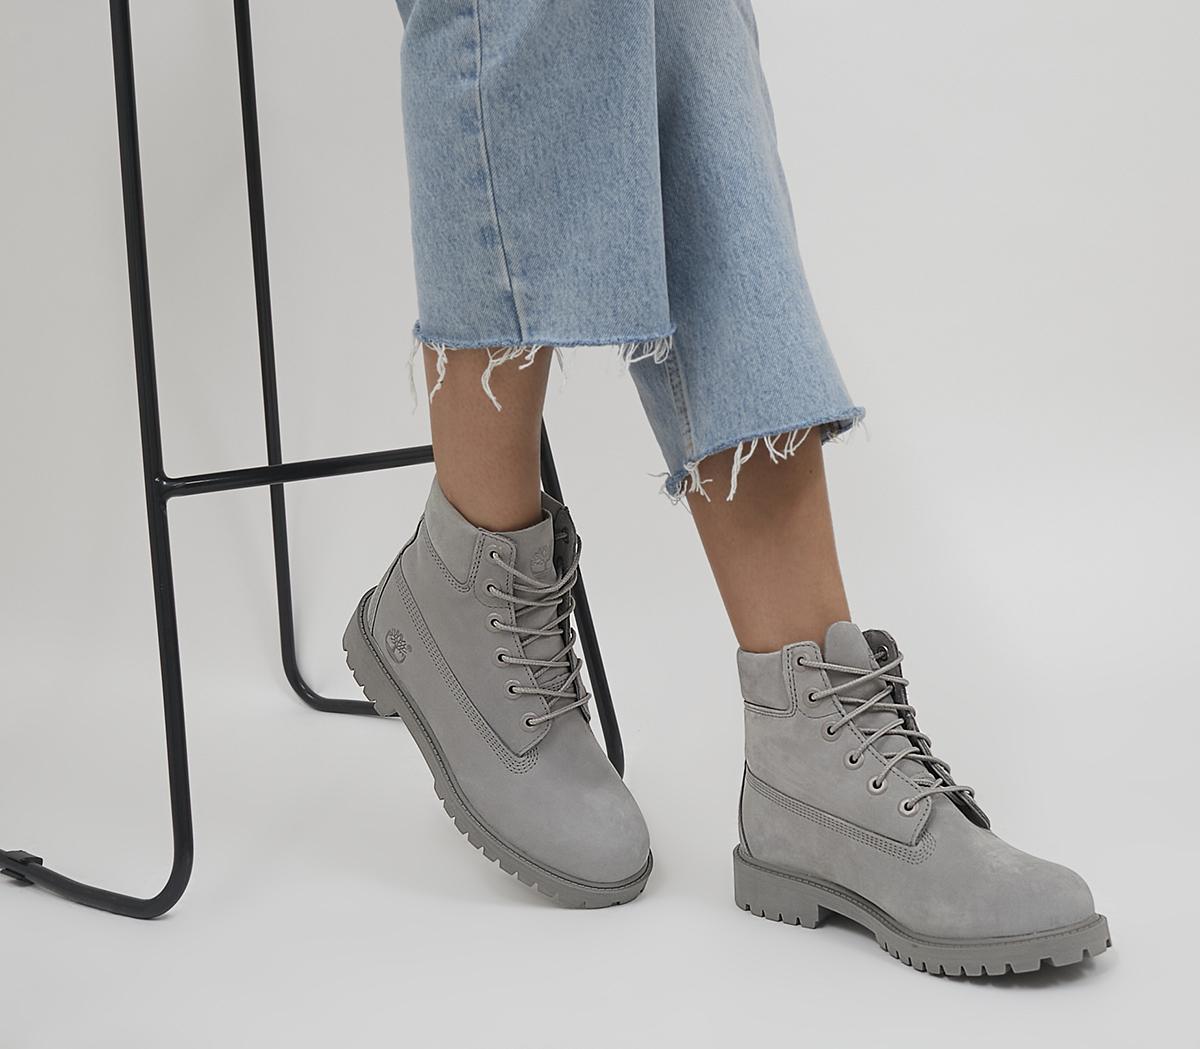 Junior 6 Premium Waterproof Boots Medium Grey - Women's Ankle Boots